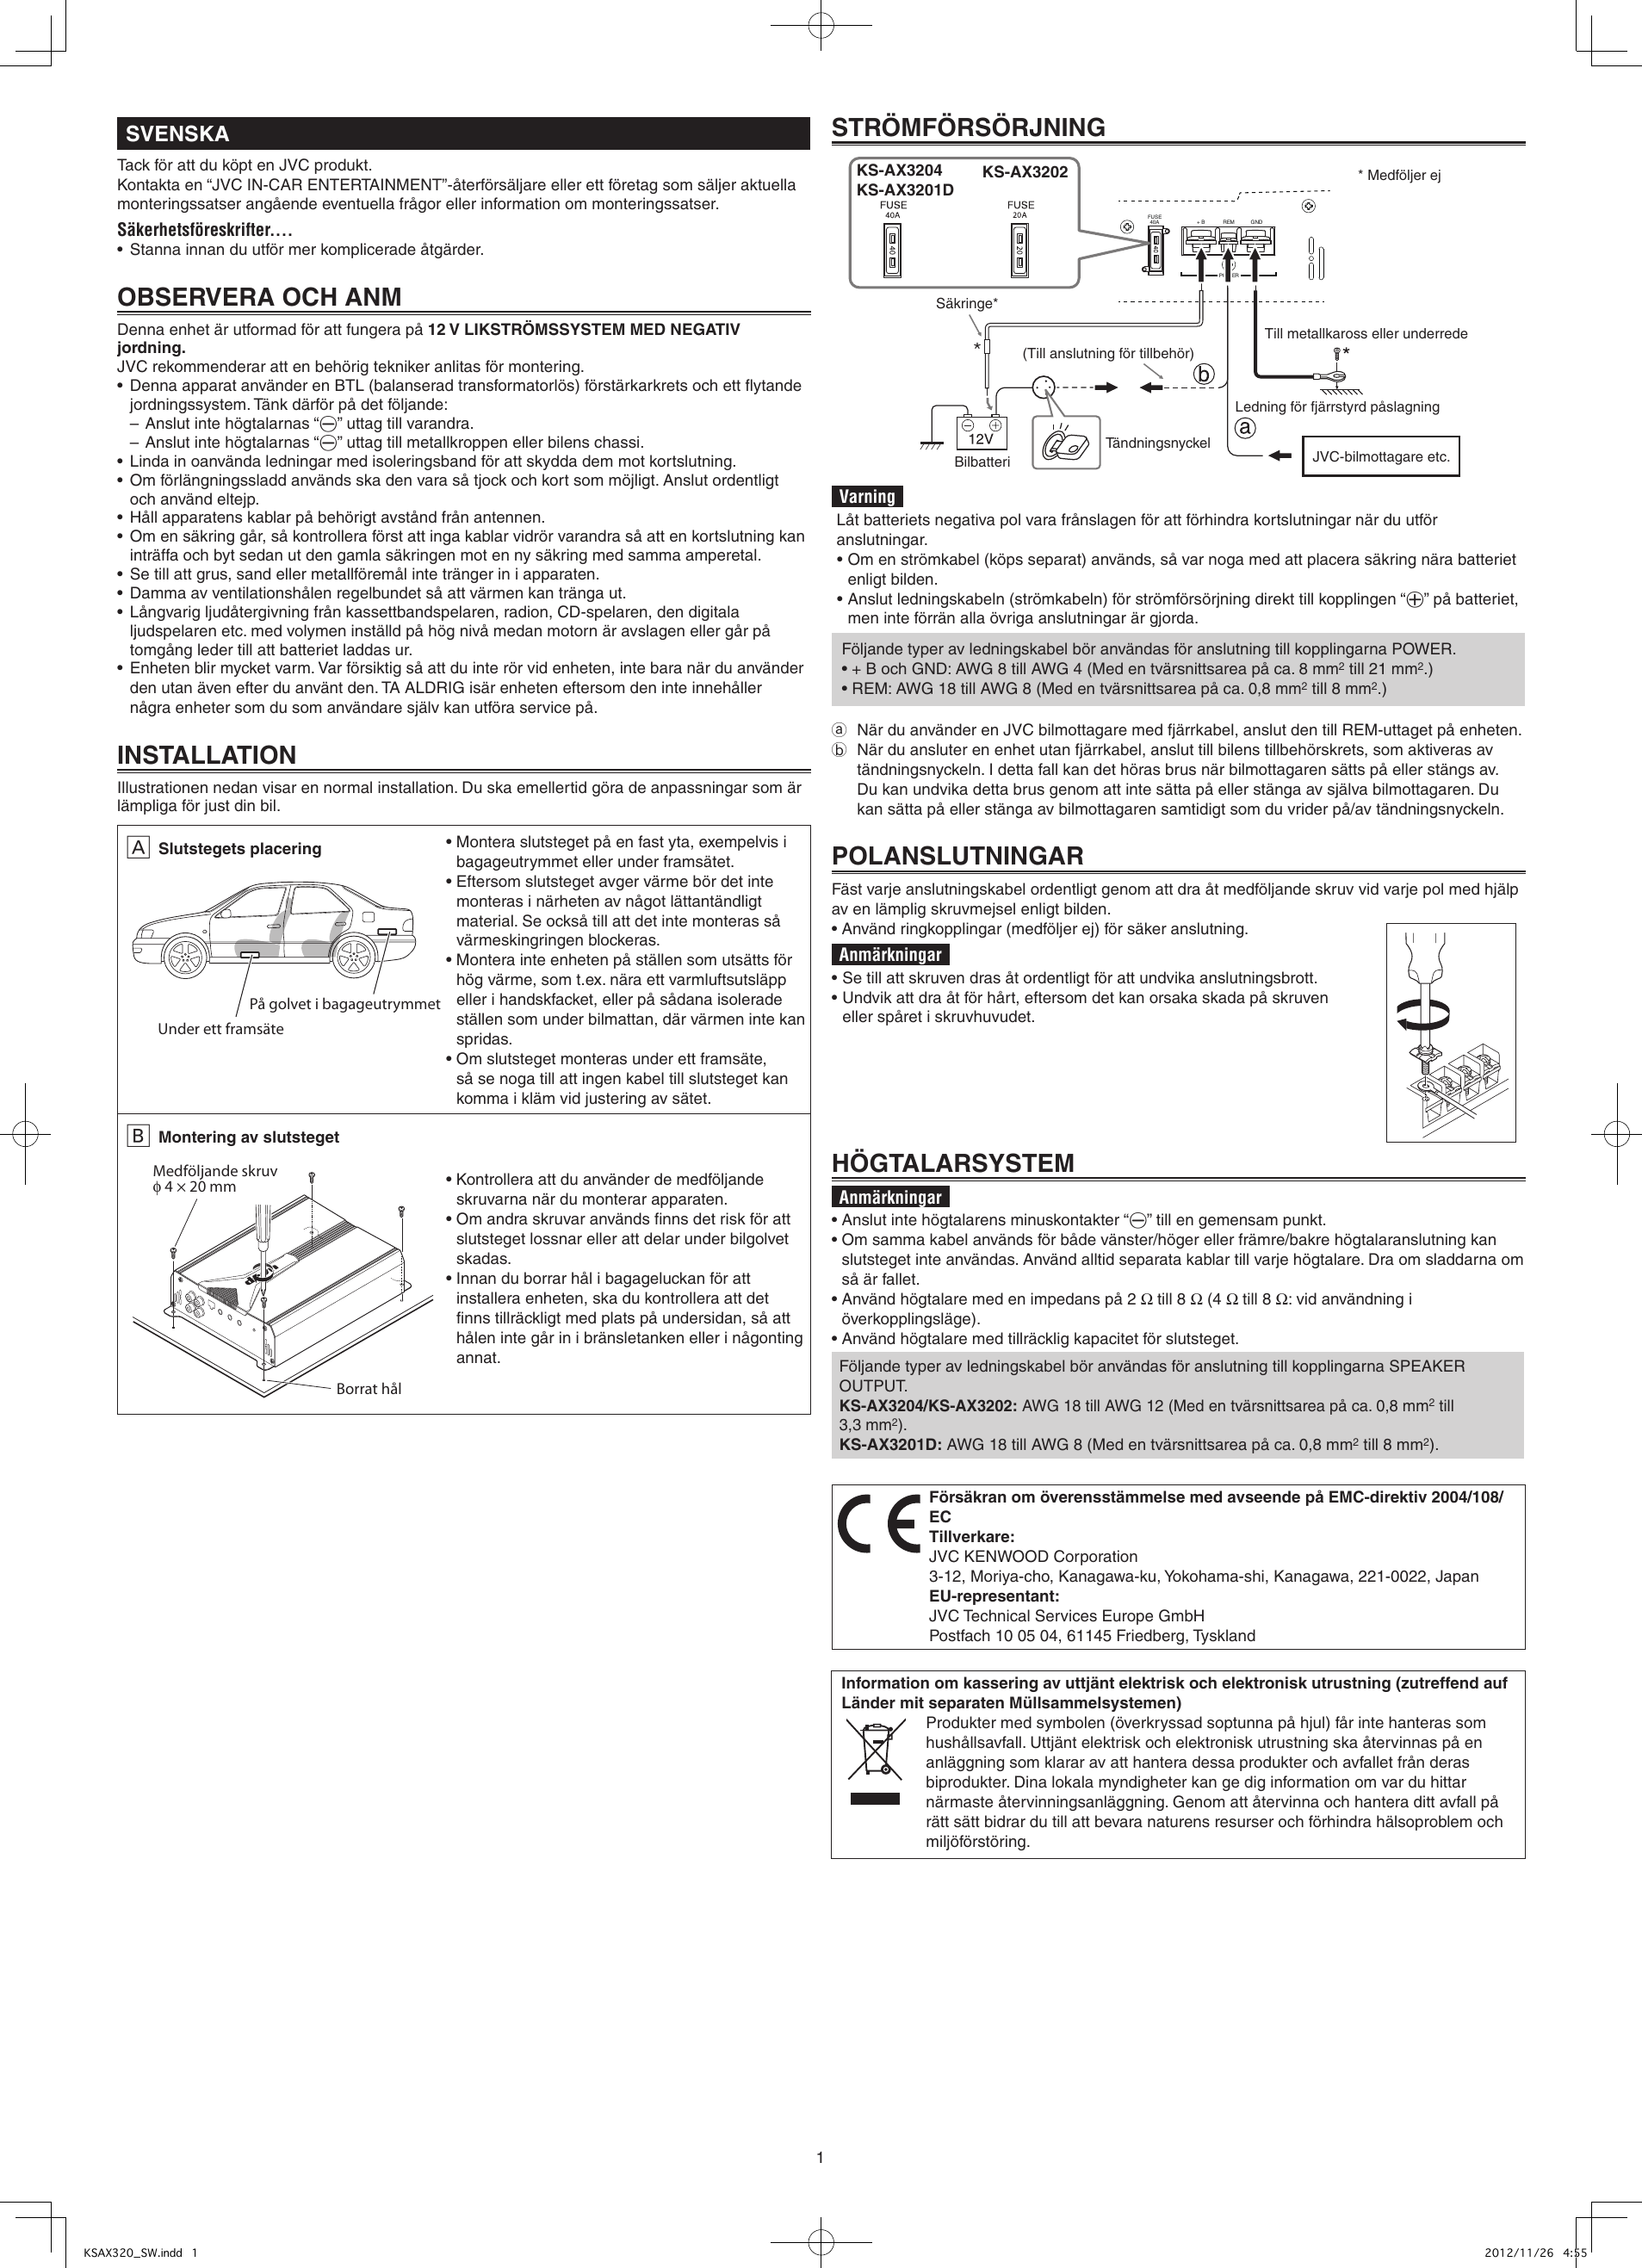 Page 4 of 6 - JVC KS-AX3201DK User Manual KS-AX3201DK, KS-AX3202K, KS-AX3204K LVT2437-003A